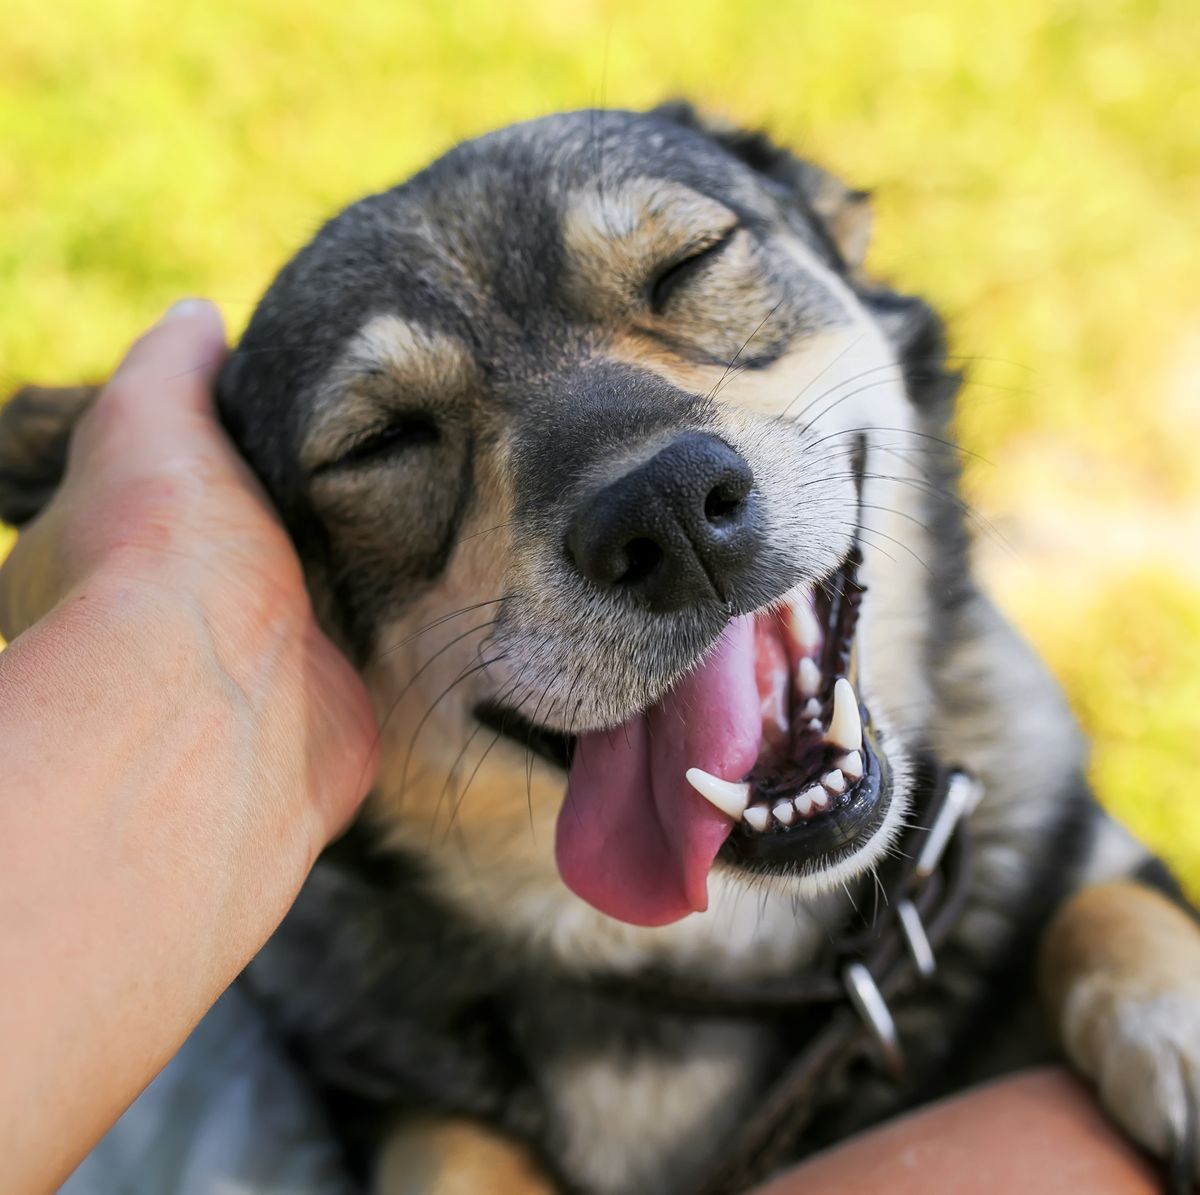 El alegre encanto de los caninos: expresionҽs faciales encantadoras y entrañables